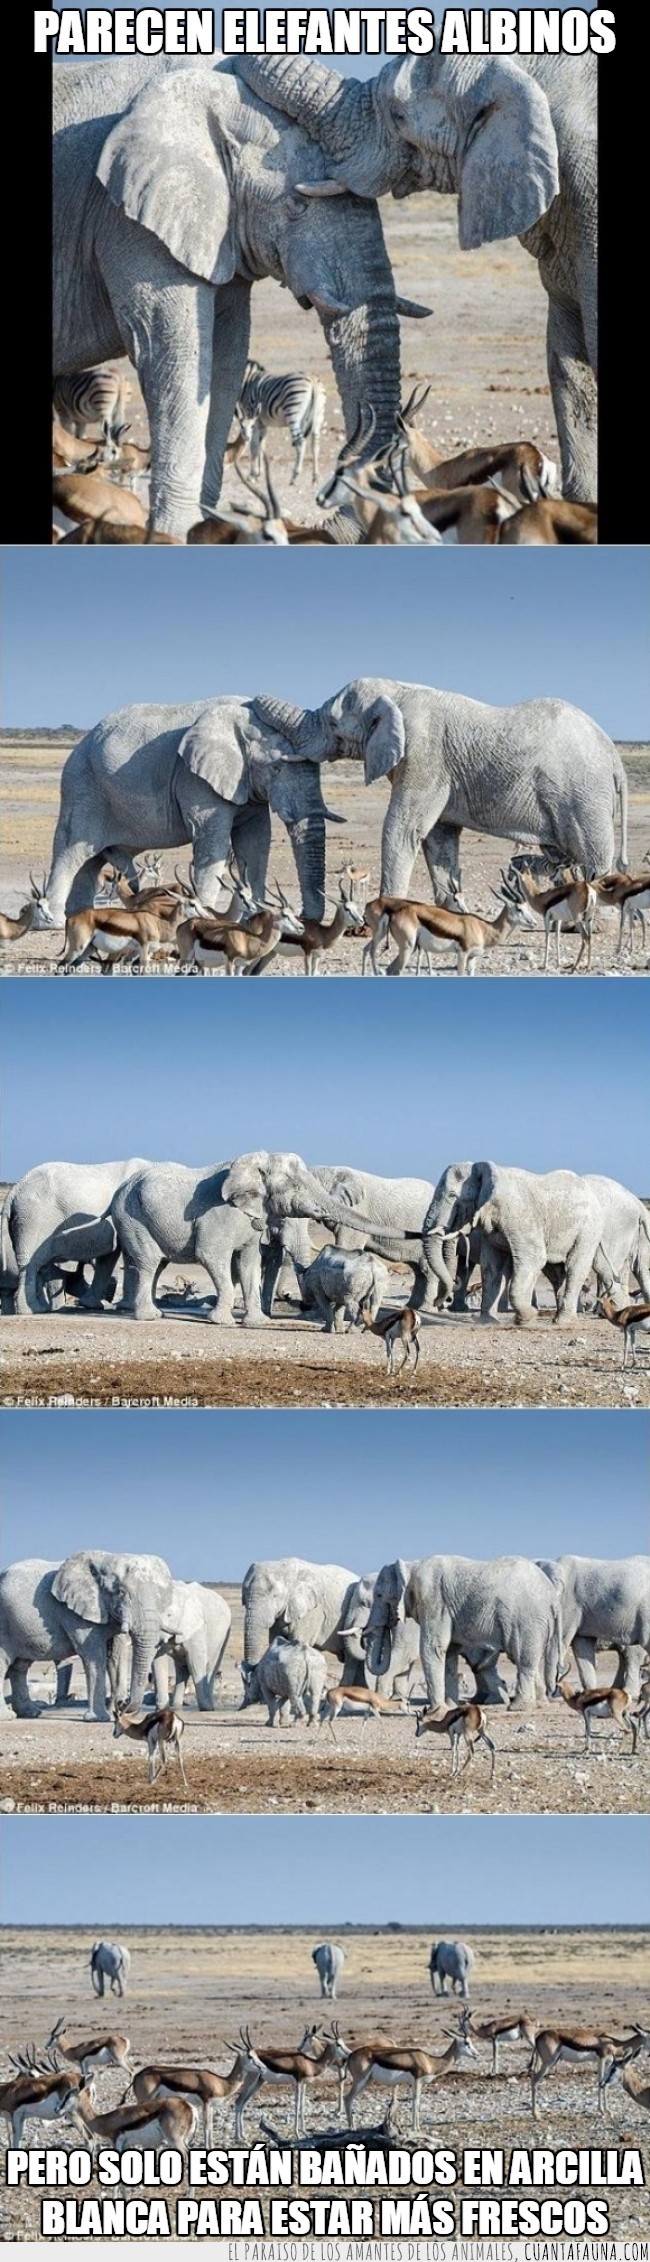 'fantasmas blancos',bañarse,calor,elefantes,Felix Reinders,frescos,mezcla de arcilla blanca y arena de calcita,Namibia,Parque Nacional de Etosha,‘pintados’ de blanco